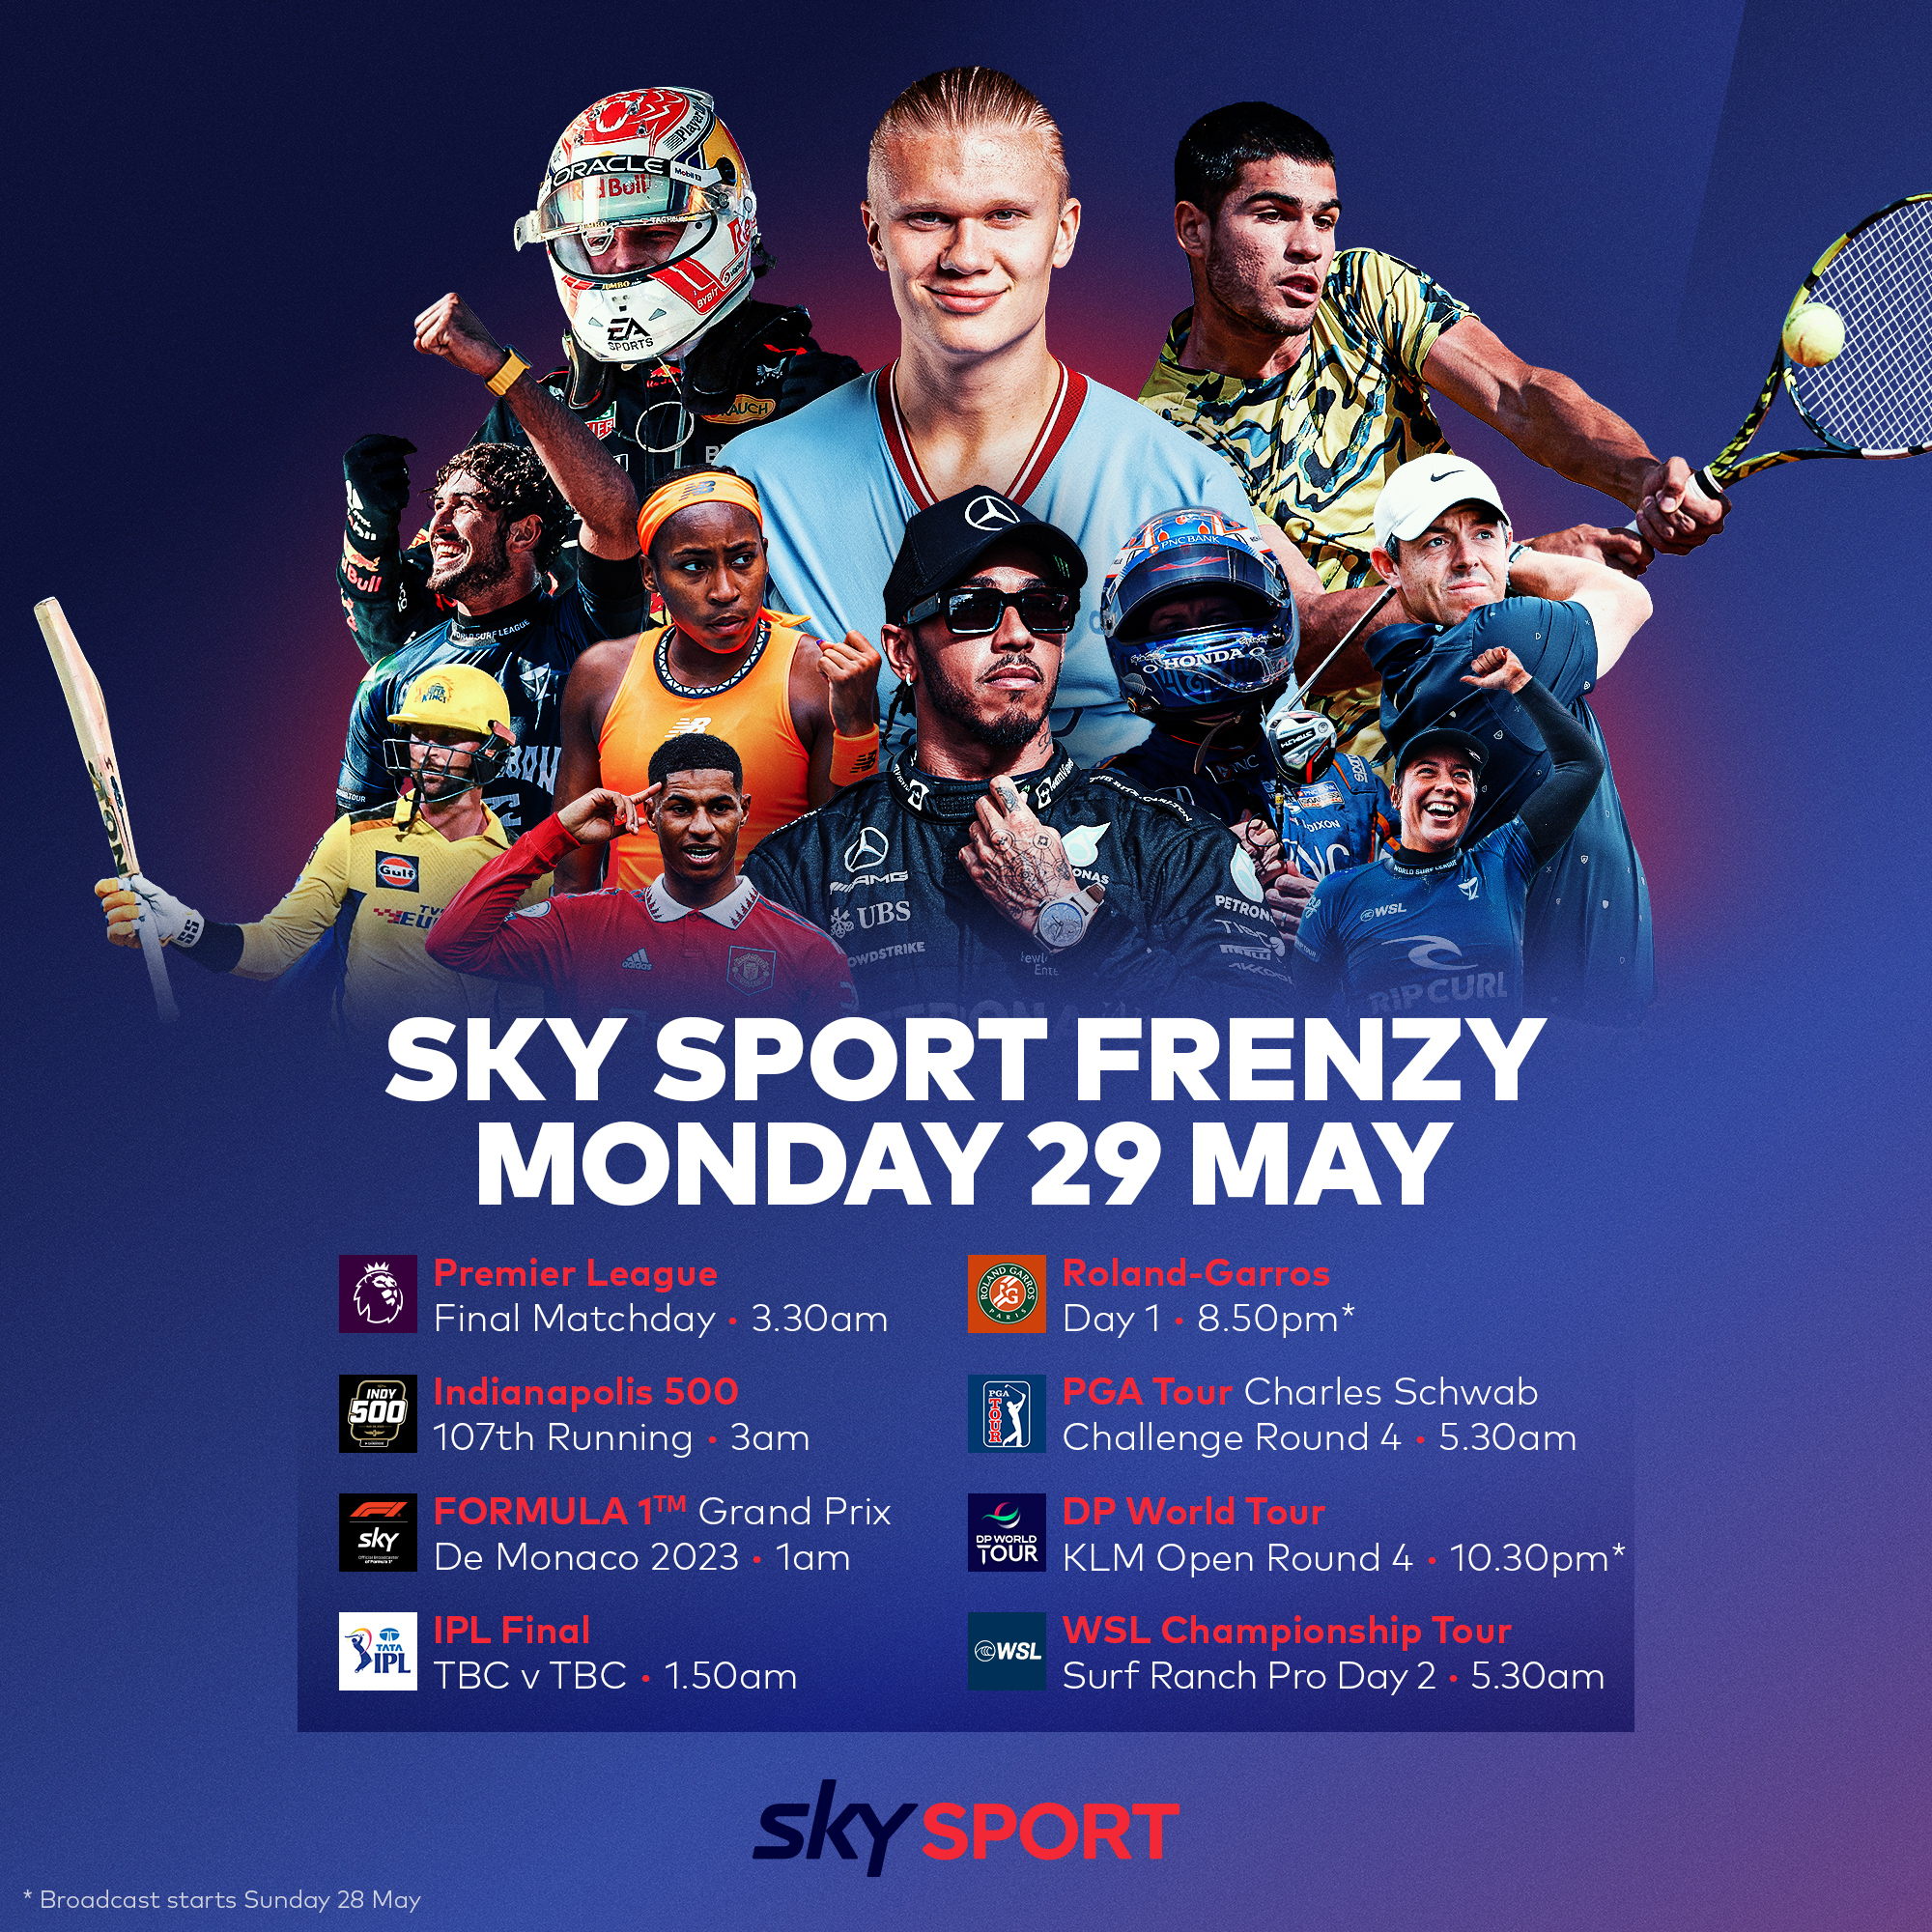 Sky Sport NZ on Twitter